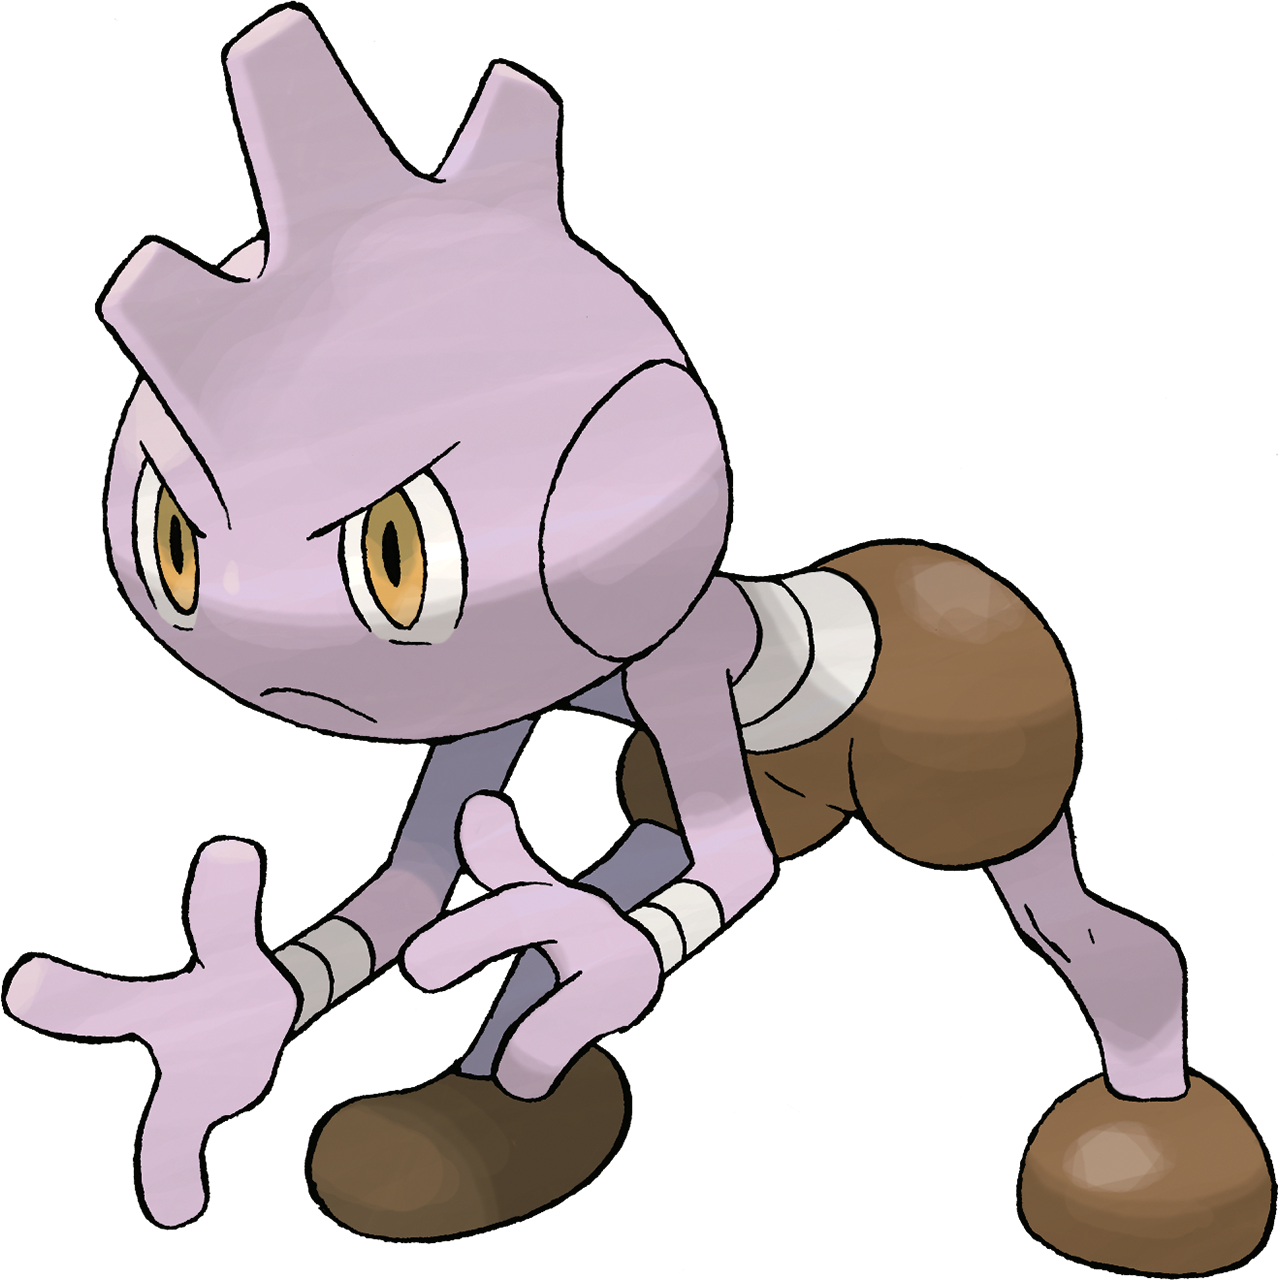 Hitmonlee (Pokémon) - Bulbapedia, the community-driven Pokémon encyclopedia